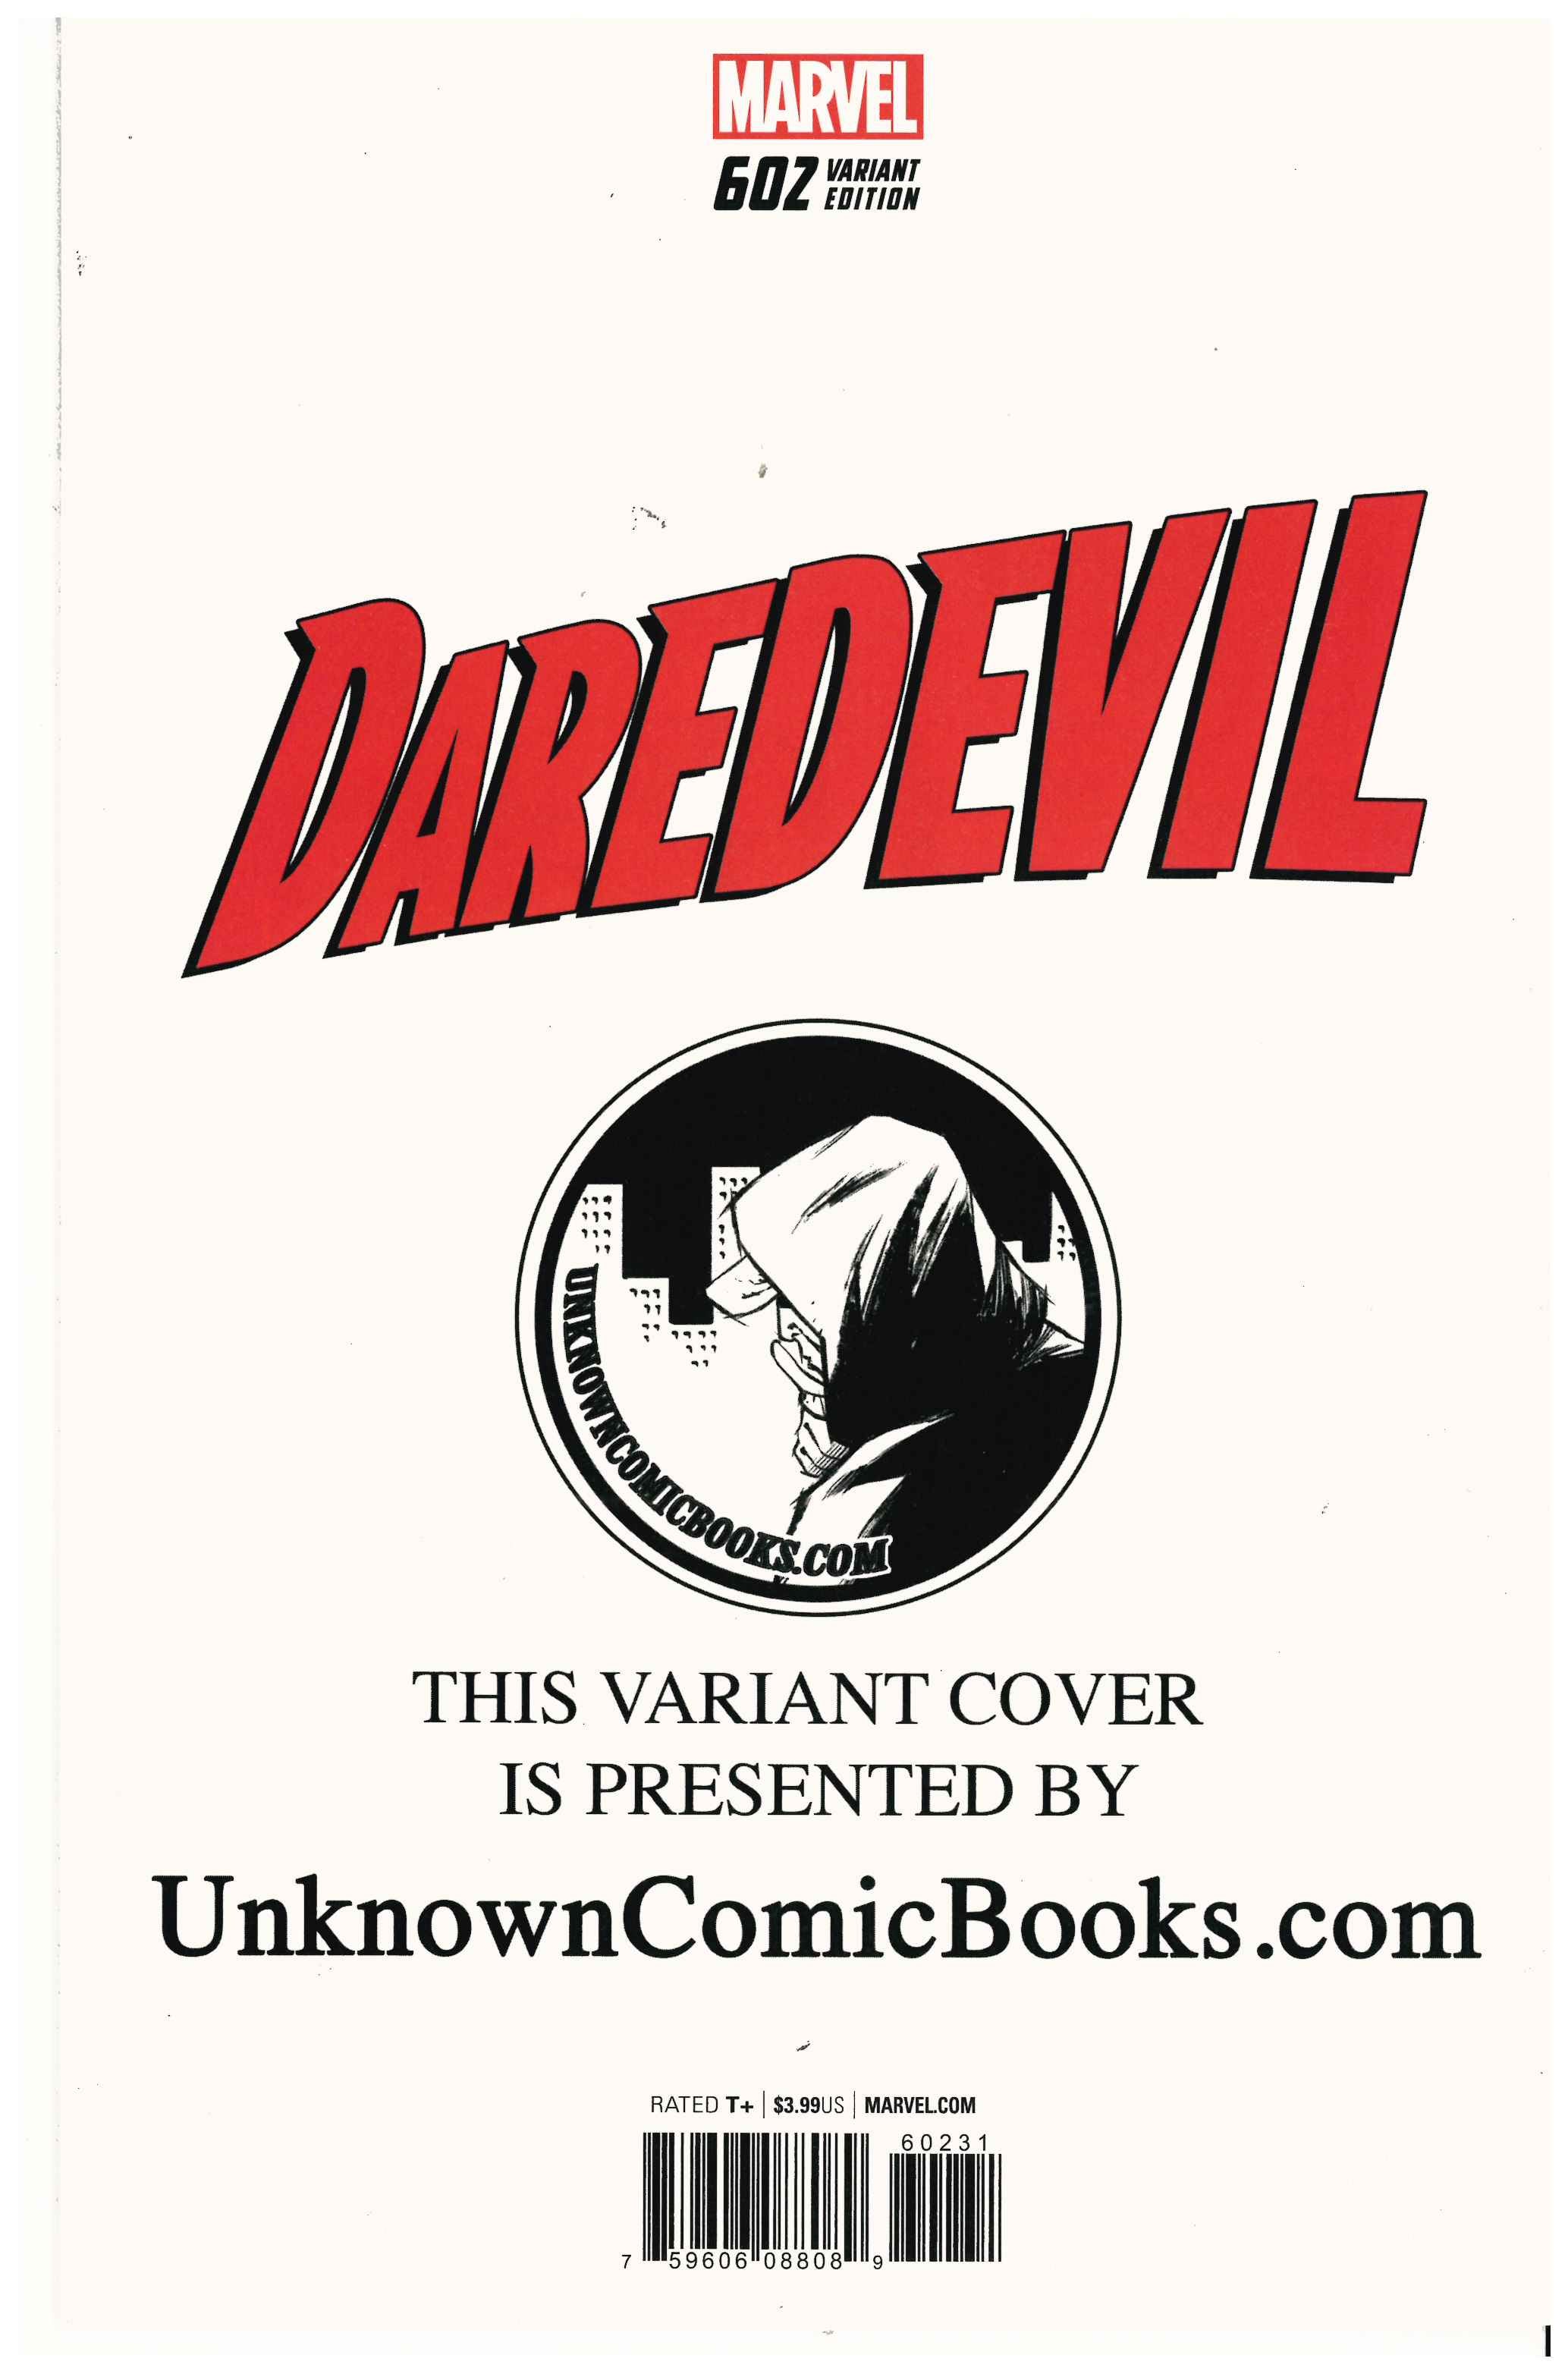 Daredevil #602 backside